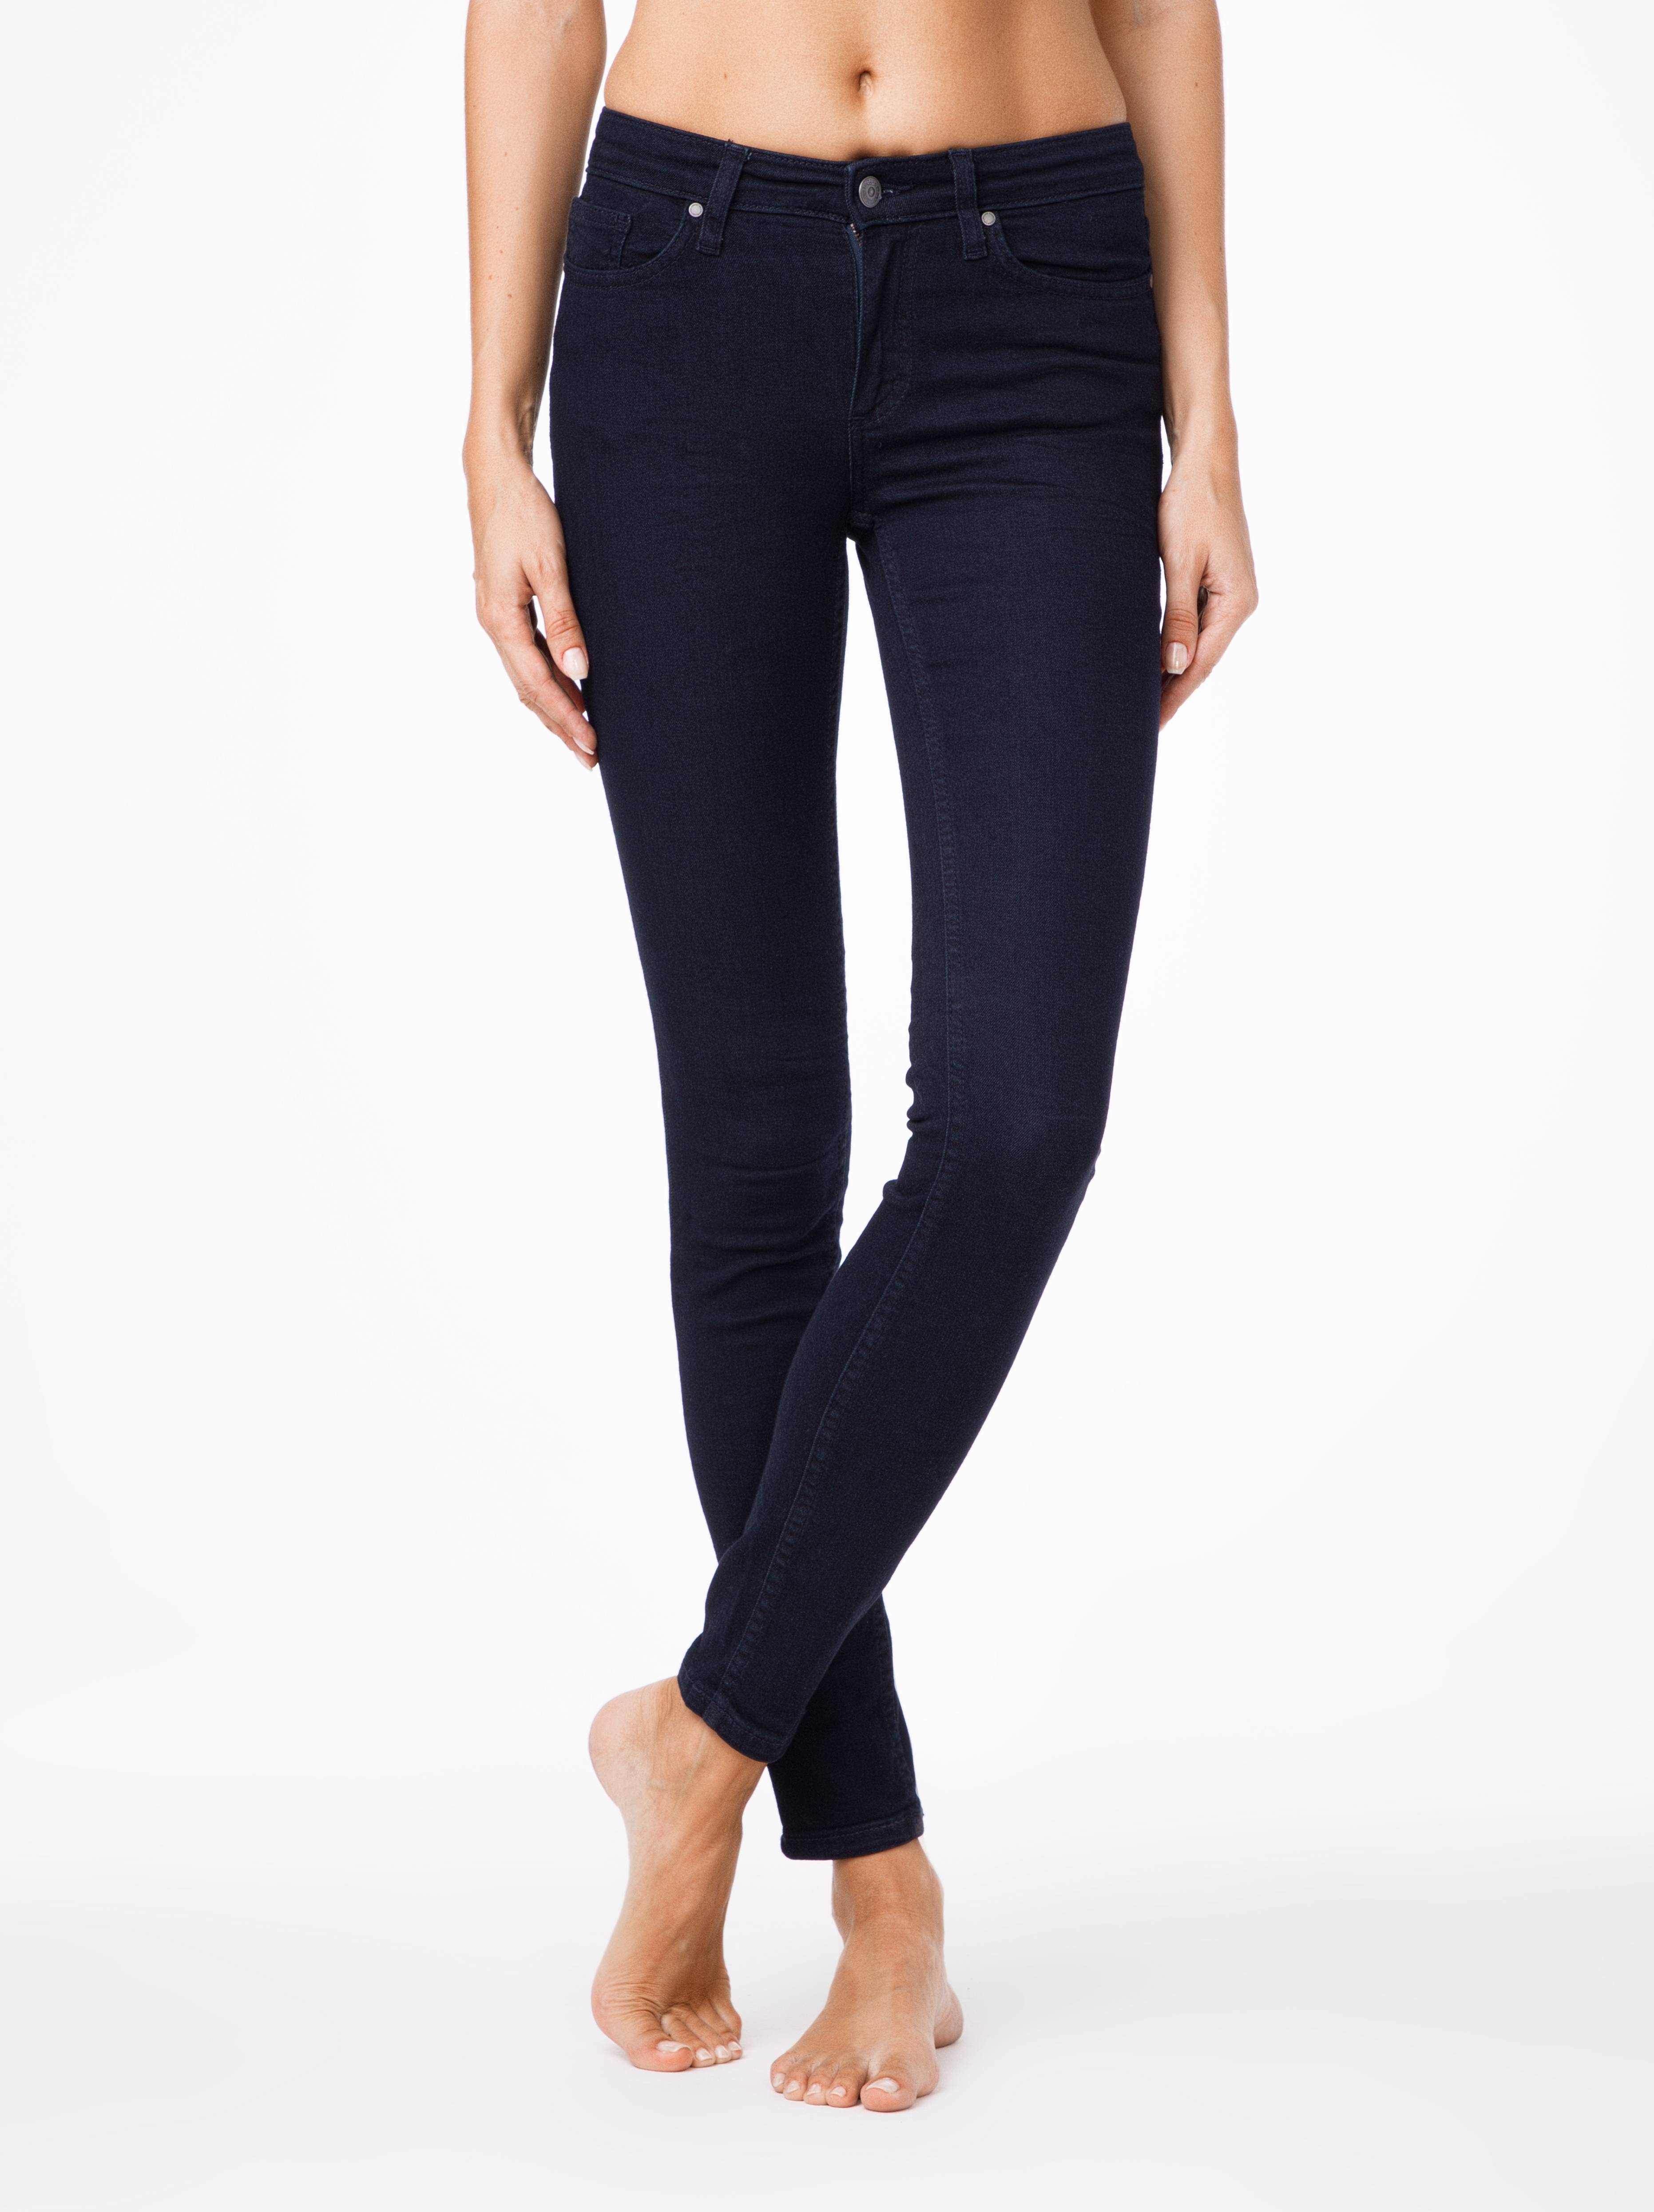 Моделирующие джинсы Skinny со средней посадкой 623-100R Conte ⭐️, цвет темно-синий, размер 170-102 - фото 1